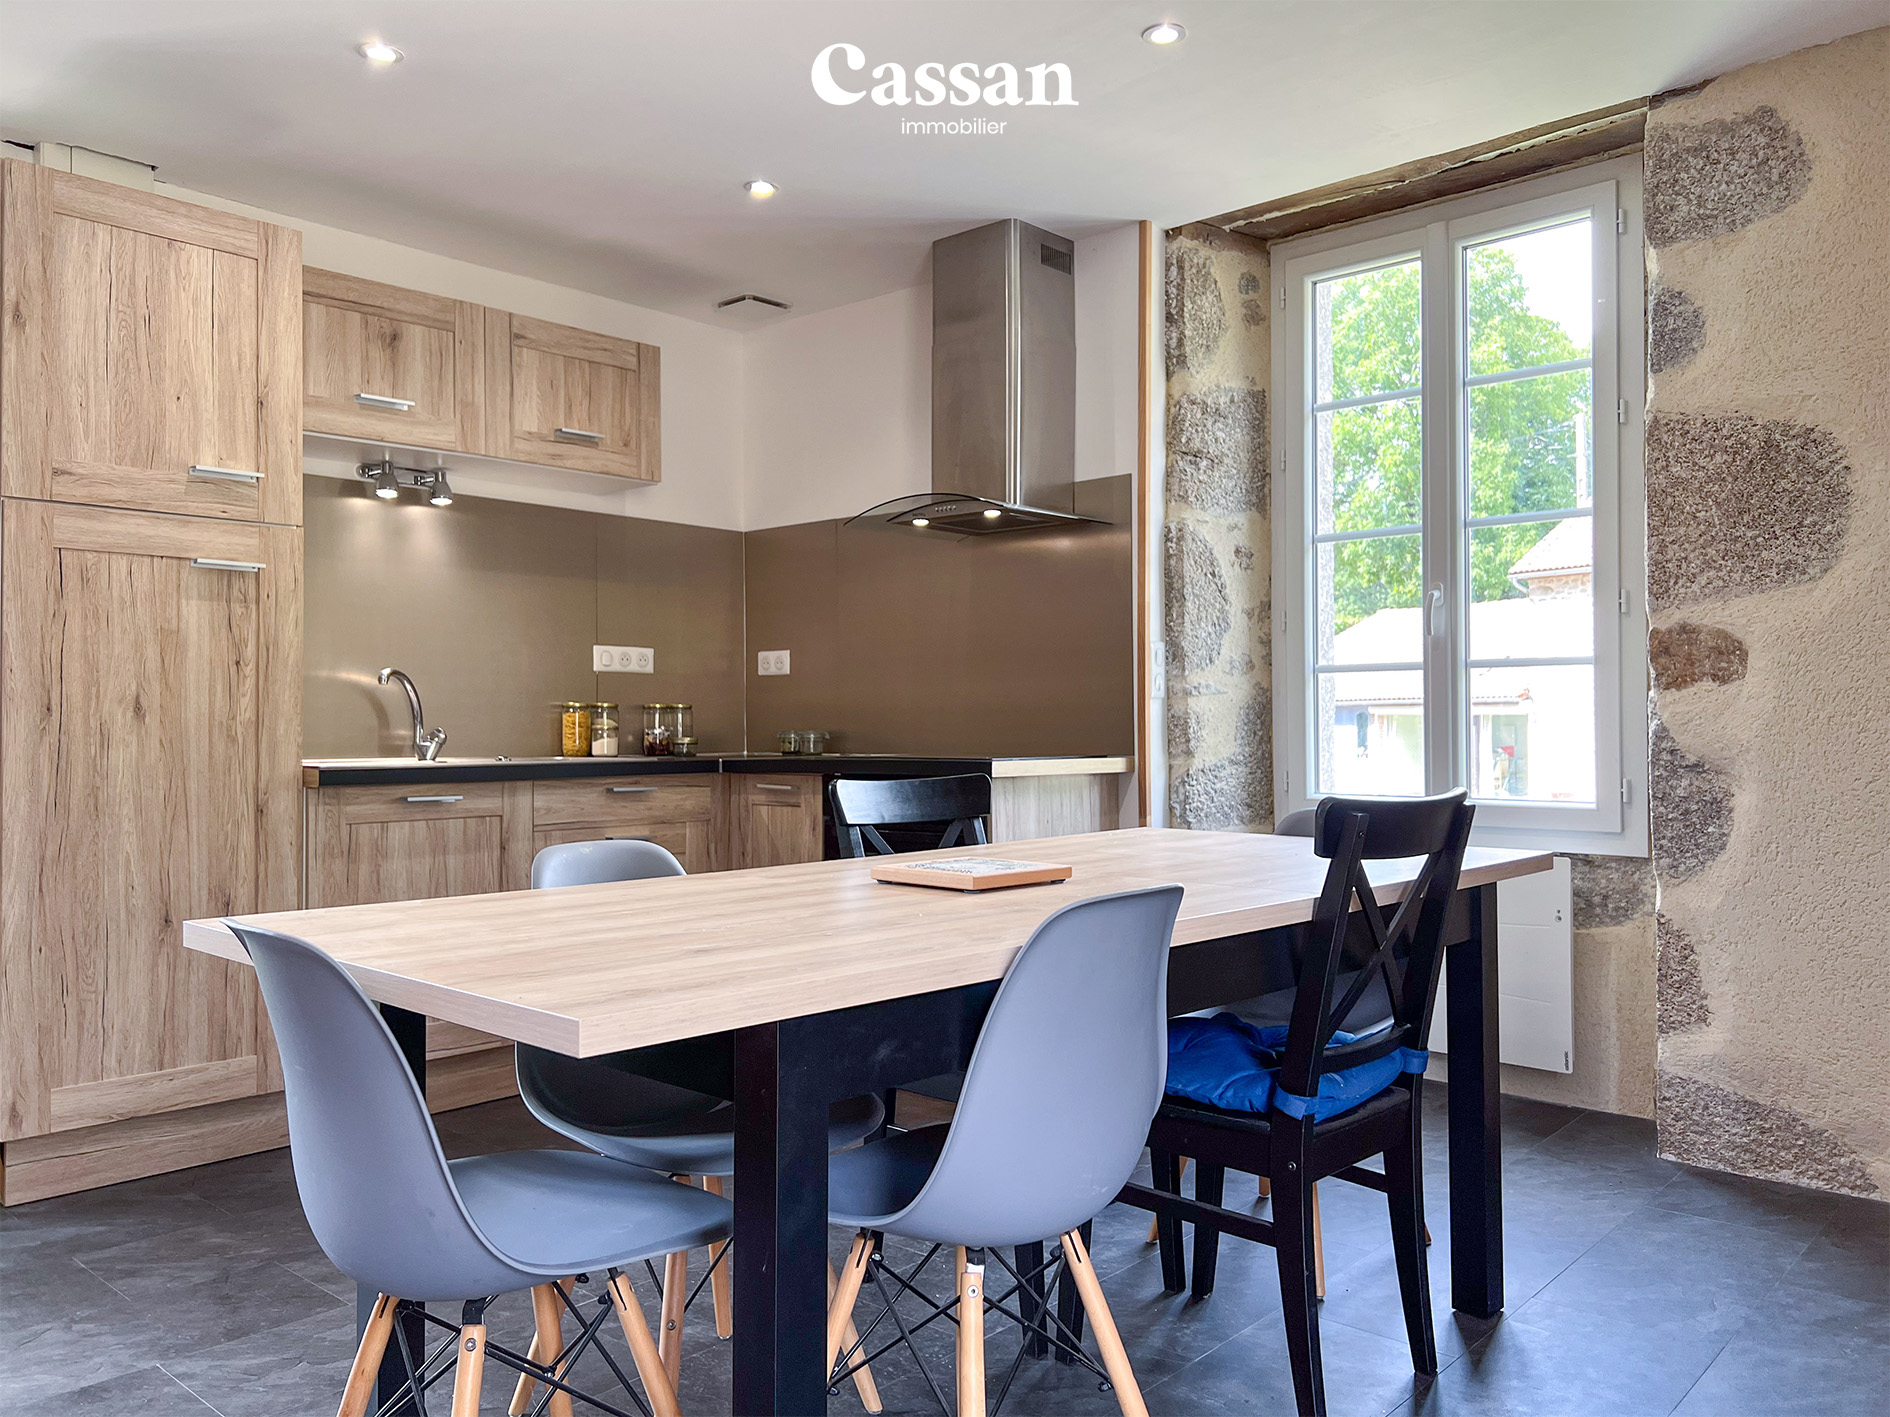 Cuisine maison à vendre Omps Cassan immobilier